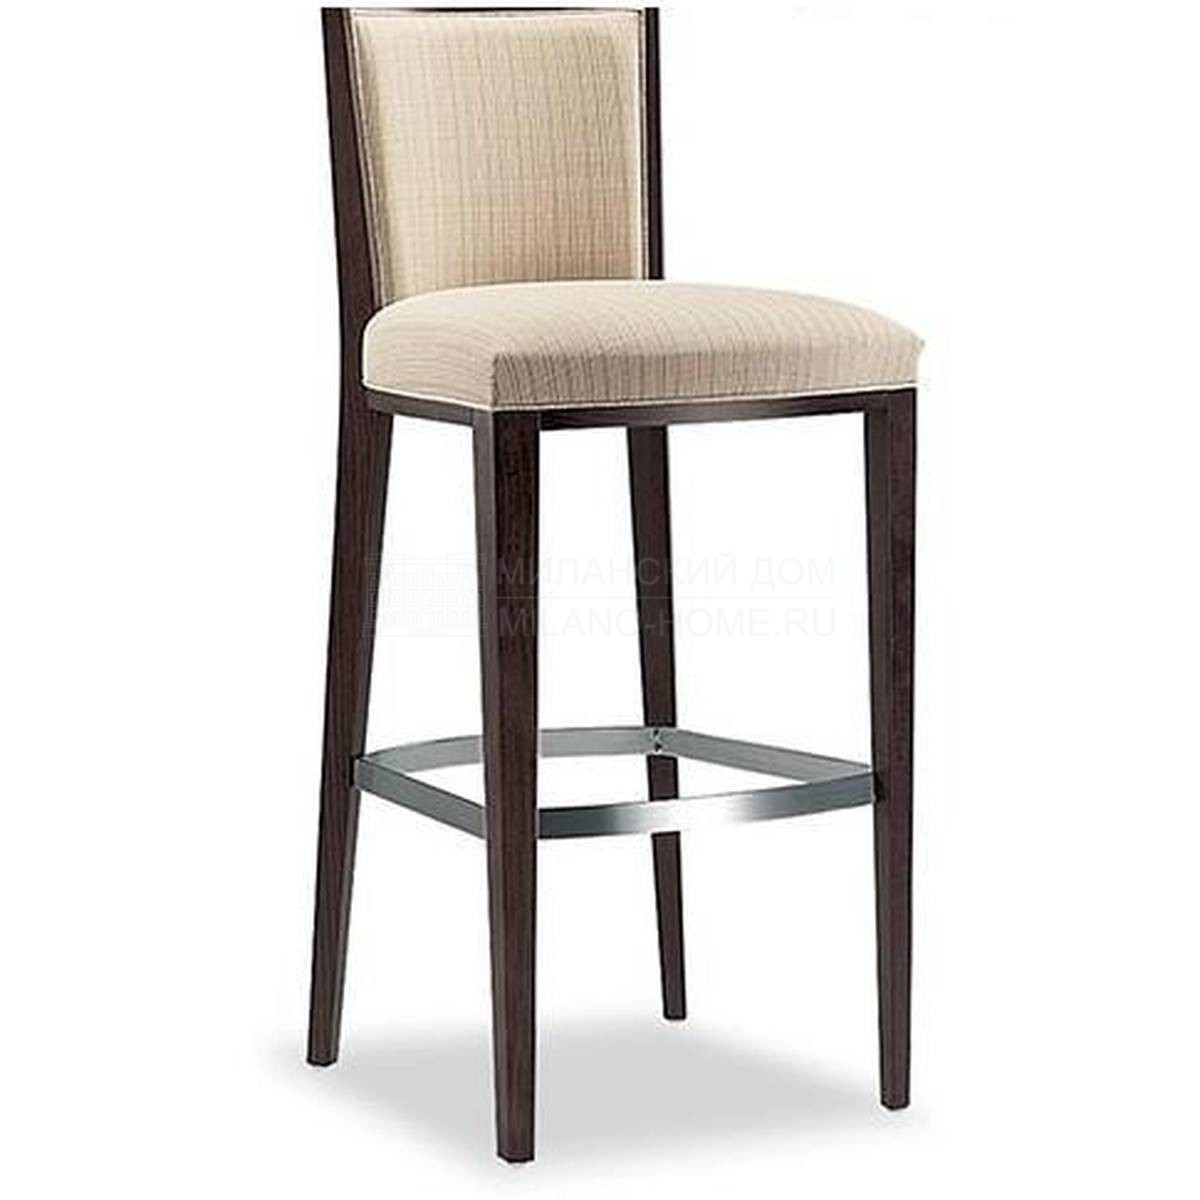 Барный стул Villa bar stool из Италии фабрики TONON